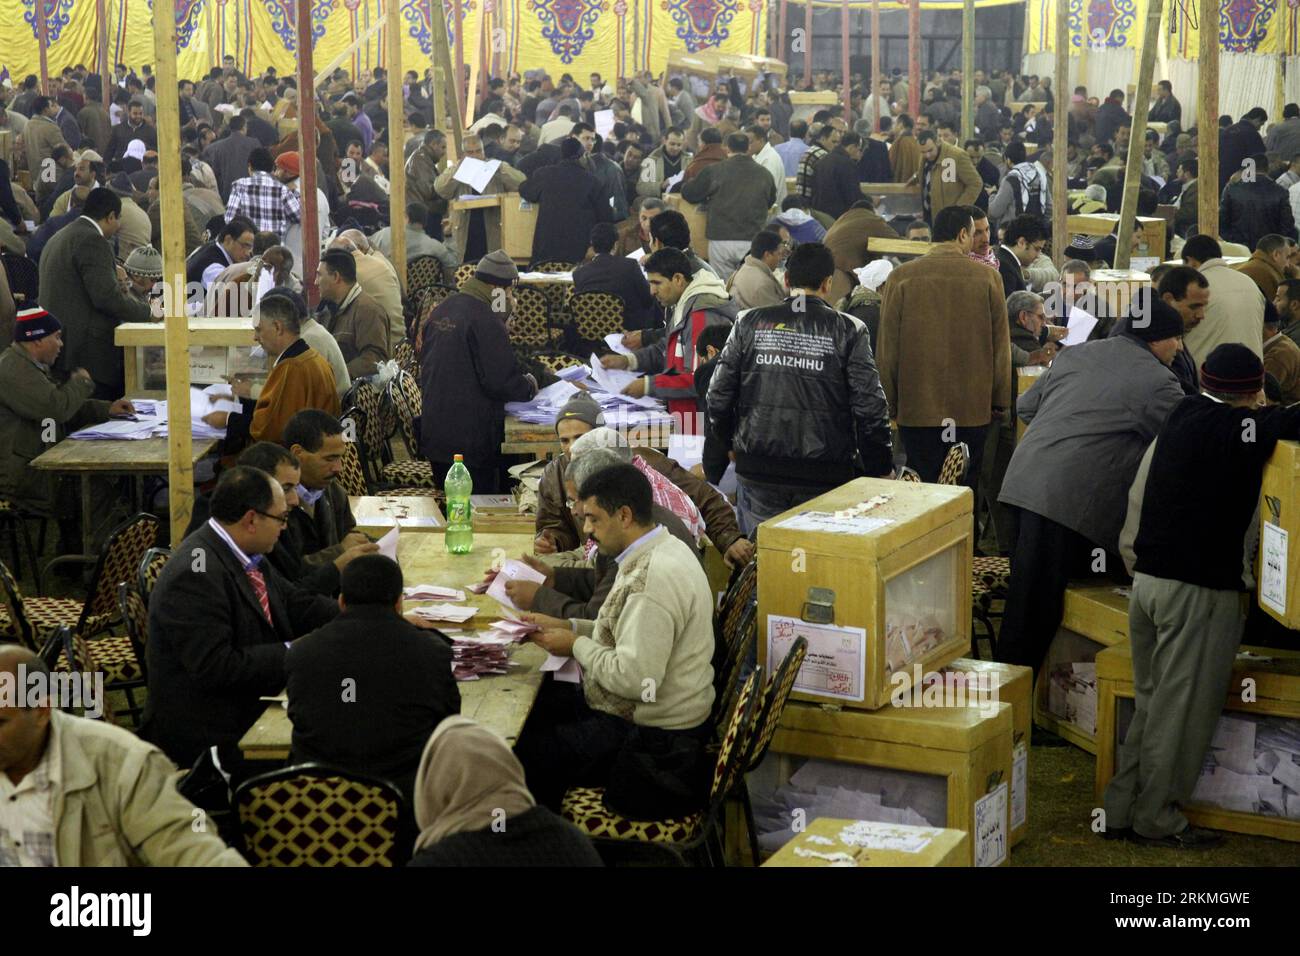 Bildnummer: 56737896 Datum: 16.12.2011 Copyright: imago/Xinhua (111216) -- GIZA, 16 dicembre 2011 (Xinhua) -- funzionari delle elezioni egiziane lavorano in un centro di conteggio delle urne dopo che i seggi elettorali sono stati chiusi nel distretto di Giza alla periferia del Cairo, Egitto, 16 dicembre 2011. Gli egiziani hanno votato mercoledì e giovedì nella seconda fase delle elezioni dell'Assemblea popolare (camera bassa del parlamento), dopo che la prima fase si è conclusa con i partiti islamici che hanno ottenuto i sondaggi. (Xinhua/Ahmad Radi) EGYPT-GIZA-ELECTION-BALLOT COUNTING PUBLICATIONxNOTxINxCHN Politik Wahl Parlamentswahl Auszählung Stimm Foto Stock